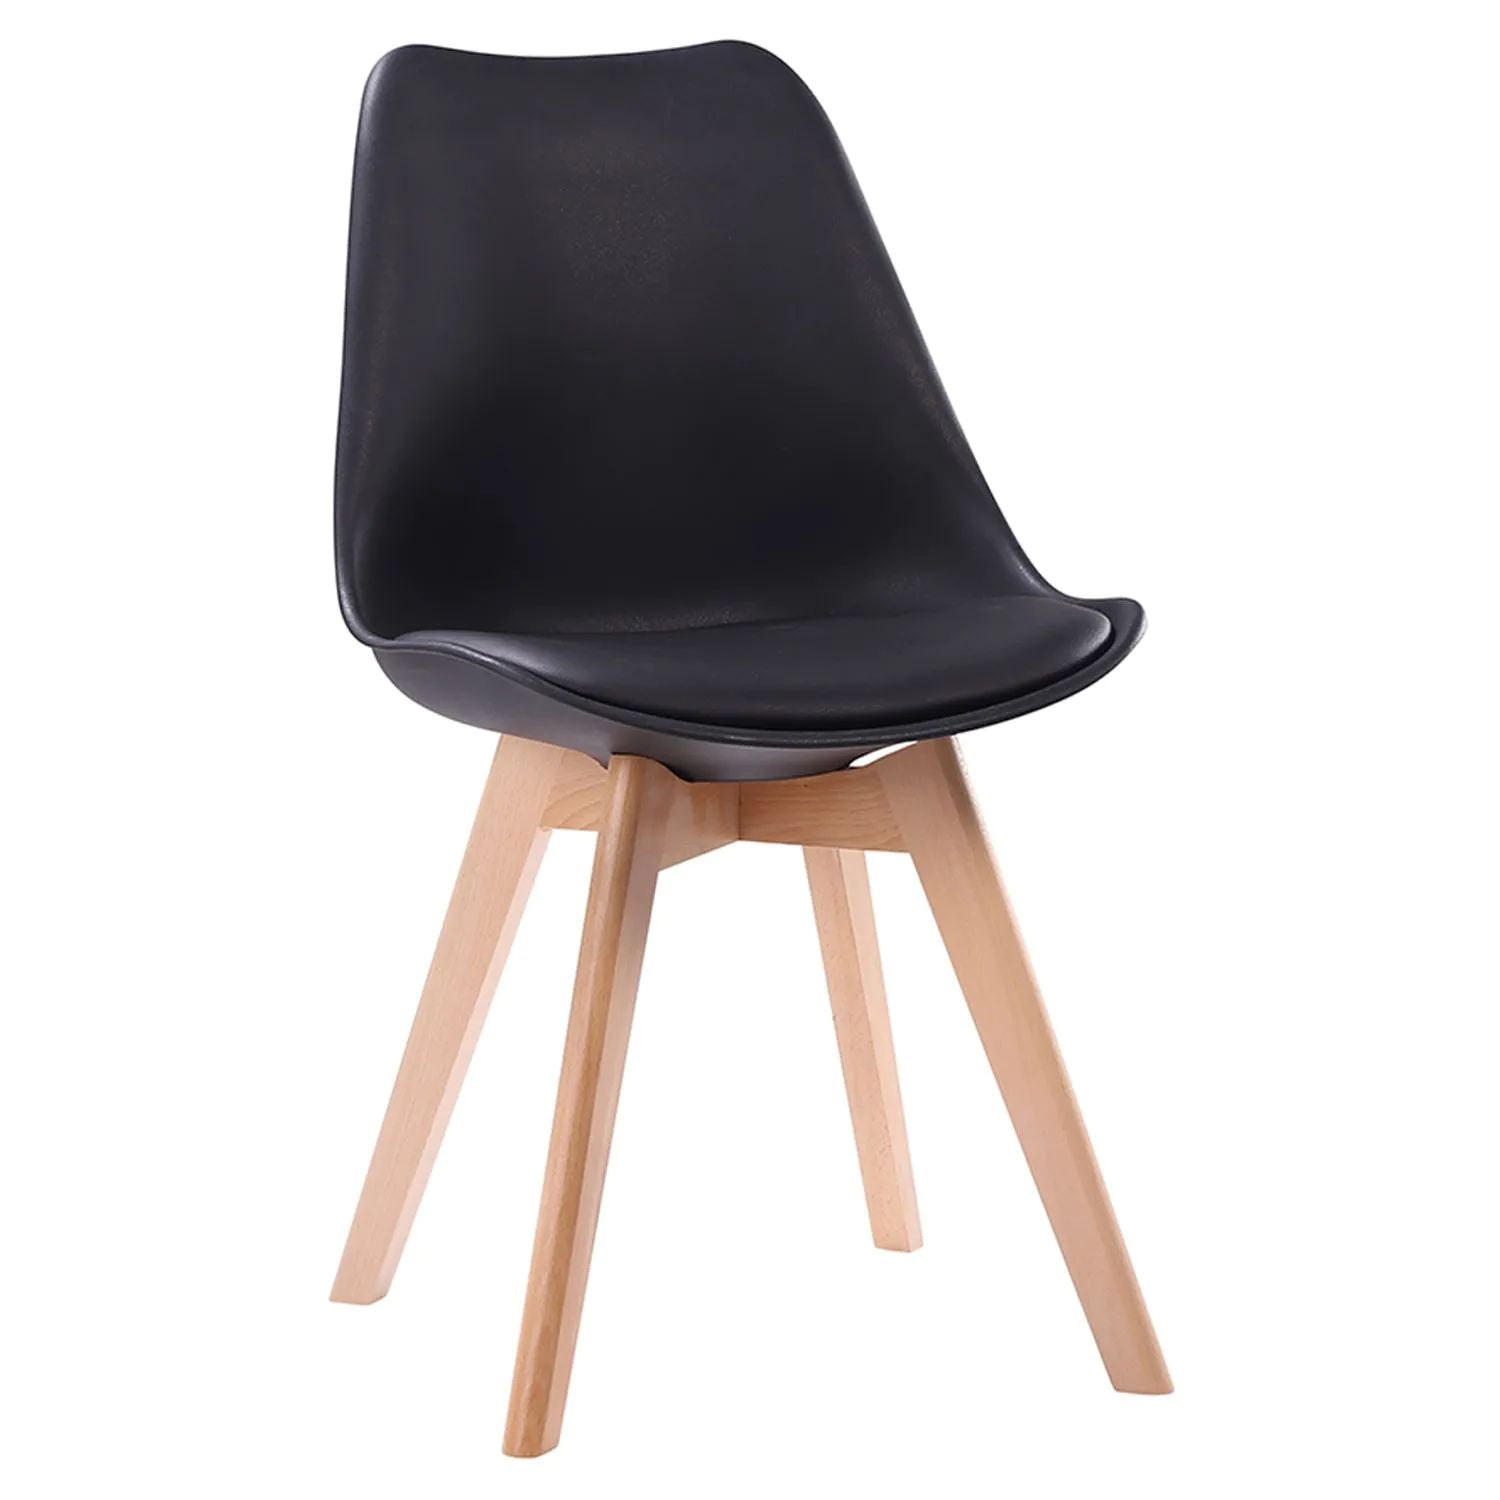 SENJA - Conjunto de mesa redonda 120 cm y 4 sillas escandinavas